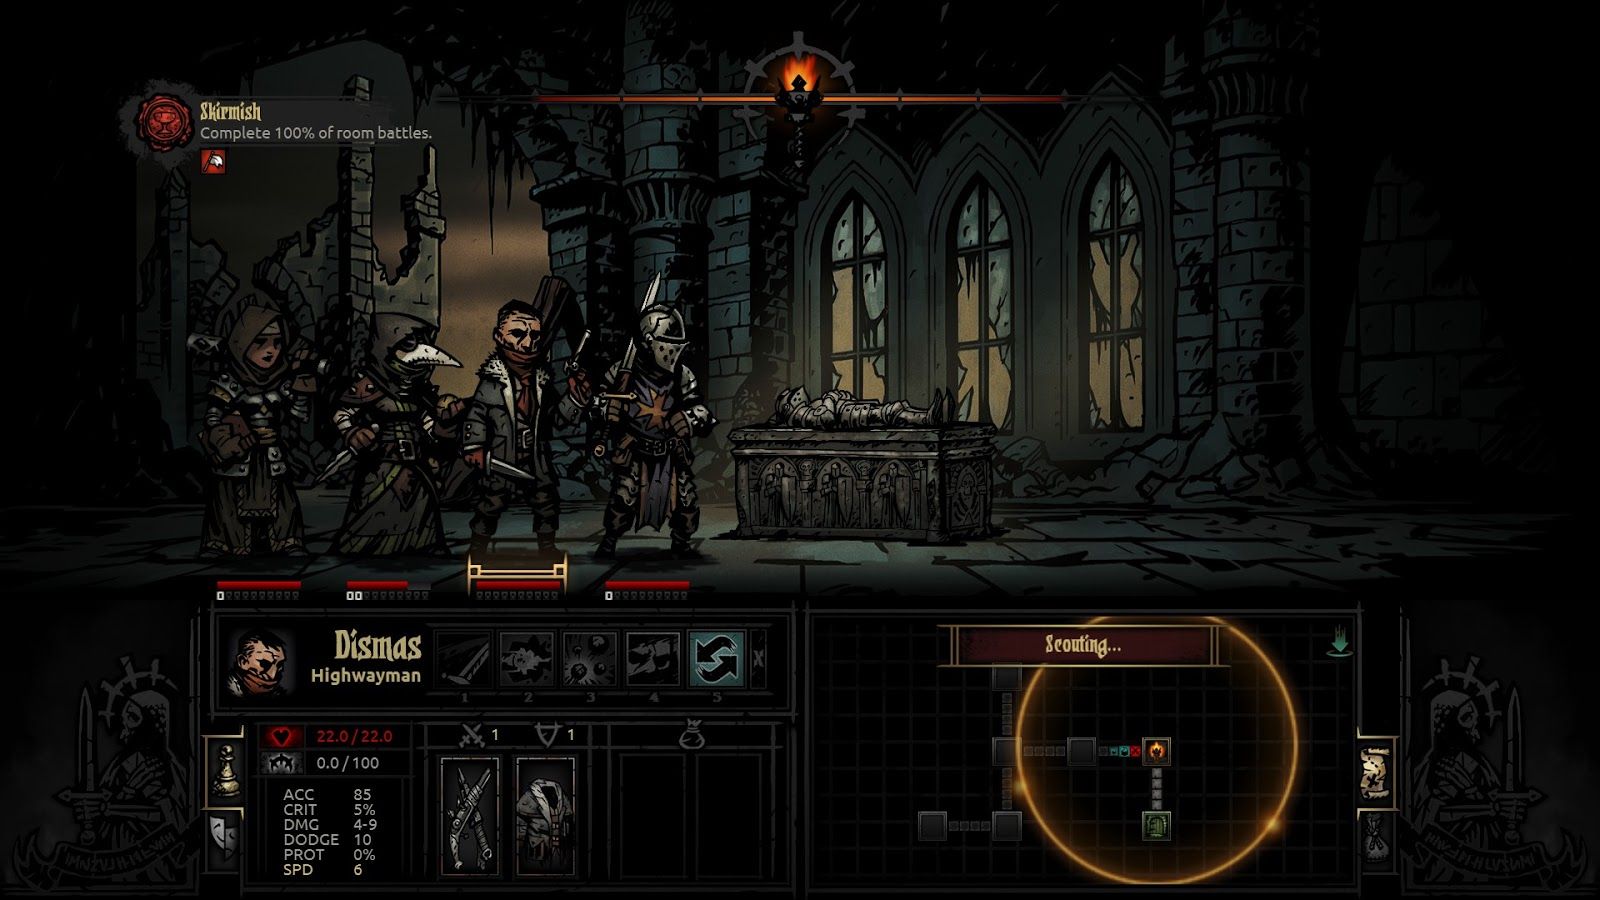 darkest dungeon shrieker save trinkets on heroes